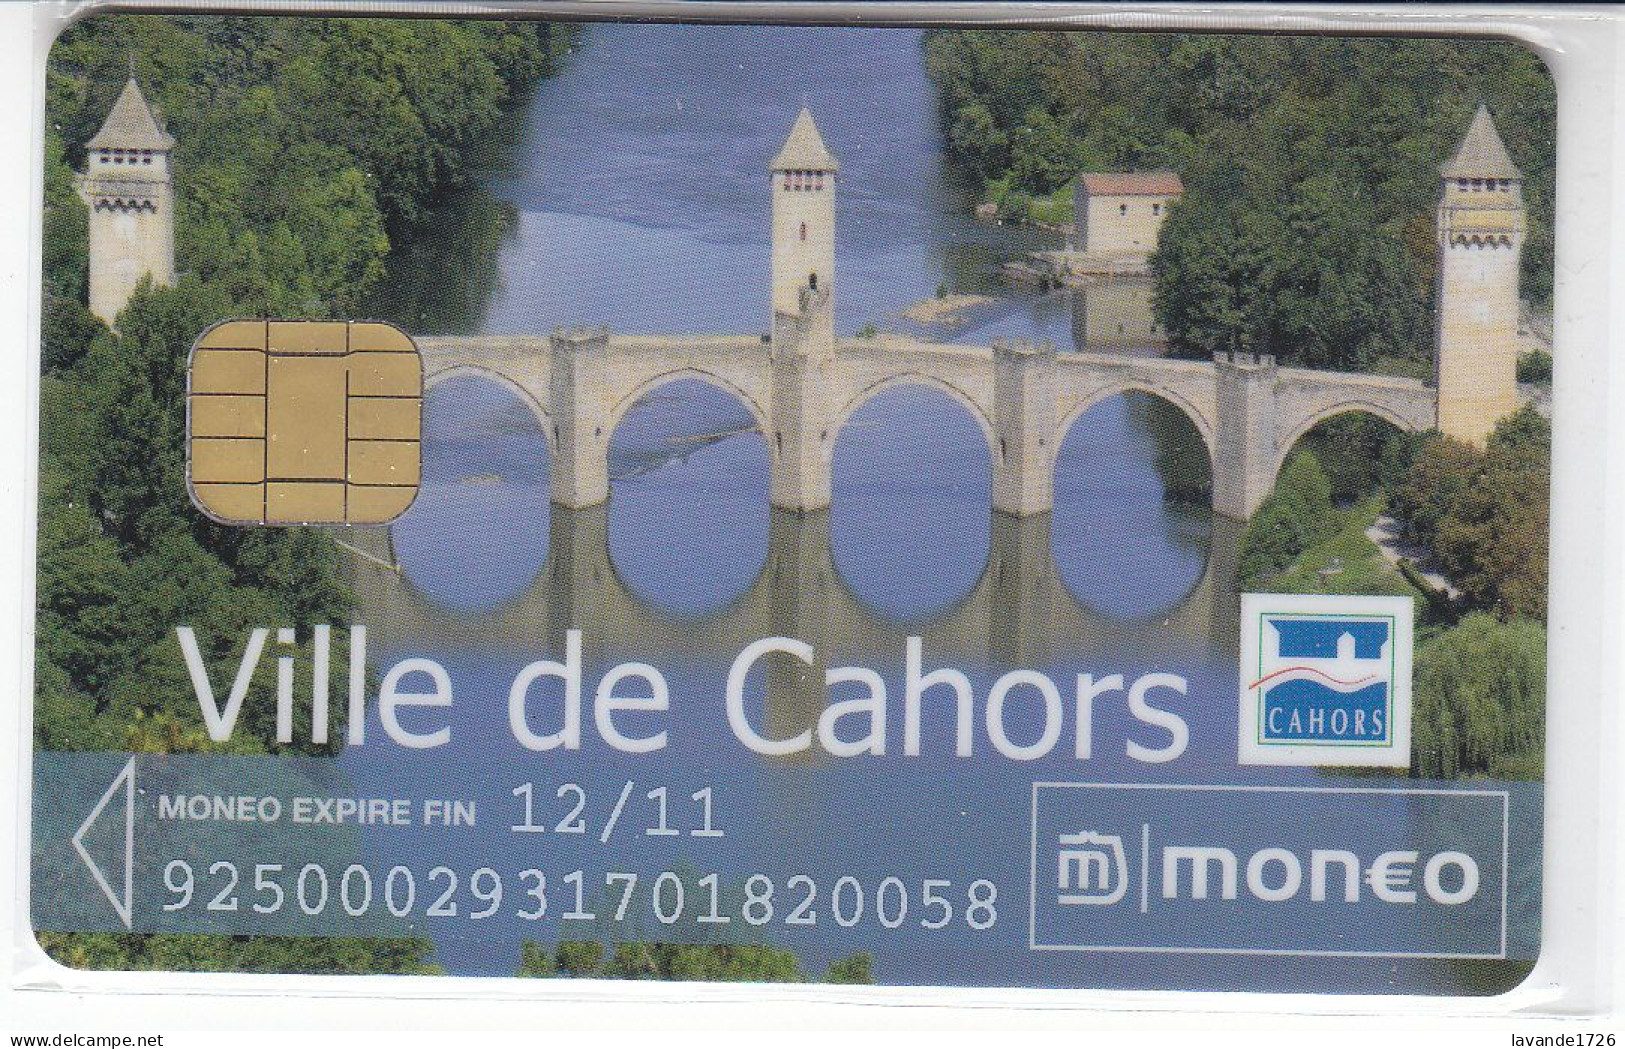 Carte MONEO   CAHORS  Date 2011 - Scontrini Di Parcheggio